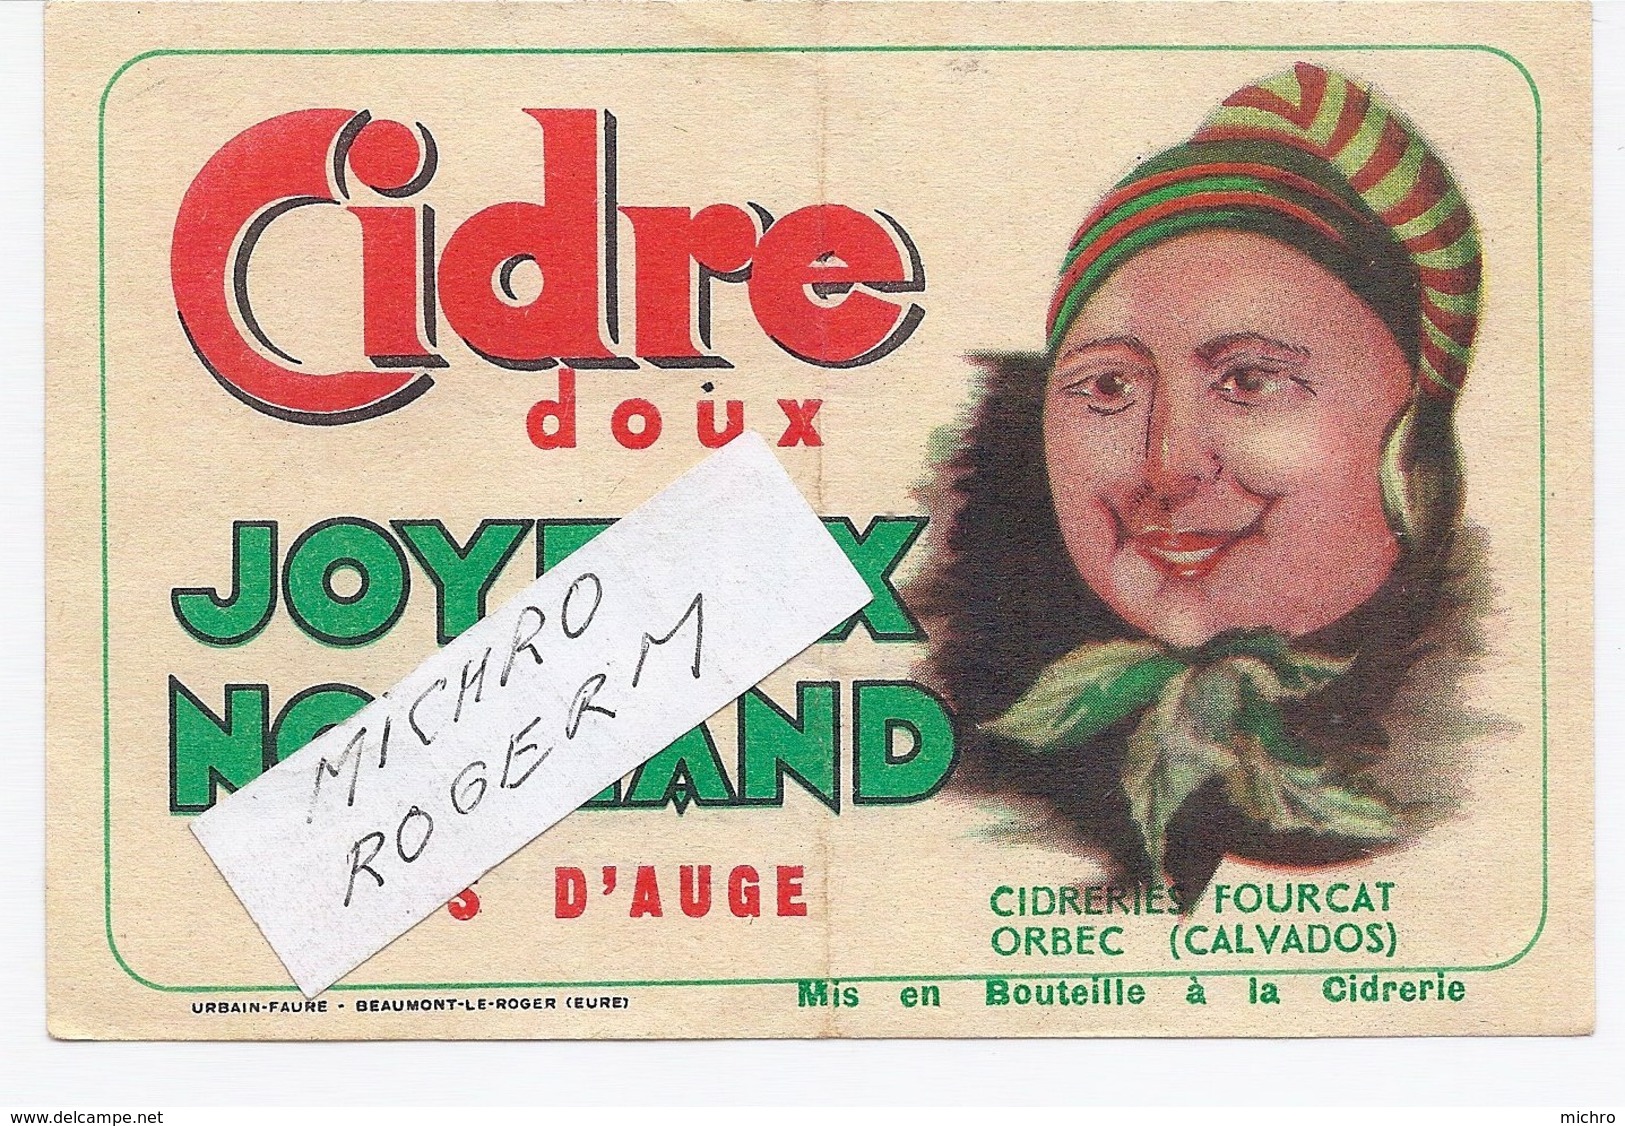 ORBEC 14 - Cidrerie FOURCAT - Etiquette Du CIDRE "joyeux Normand" - 551119 - Werbung